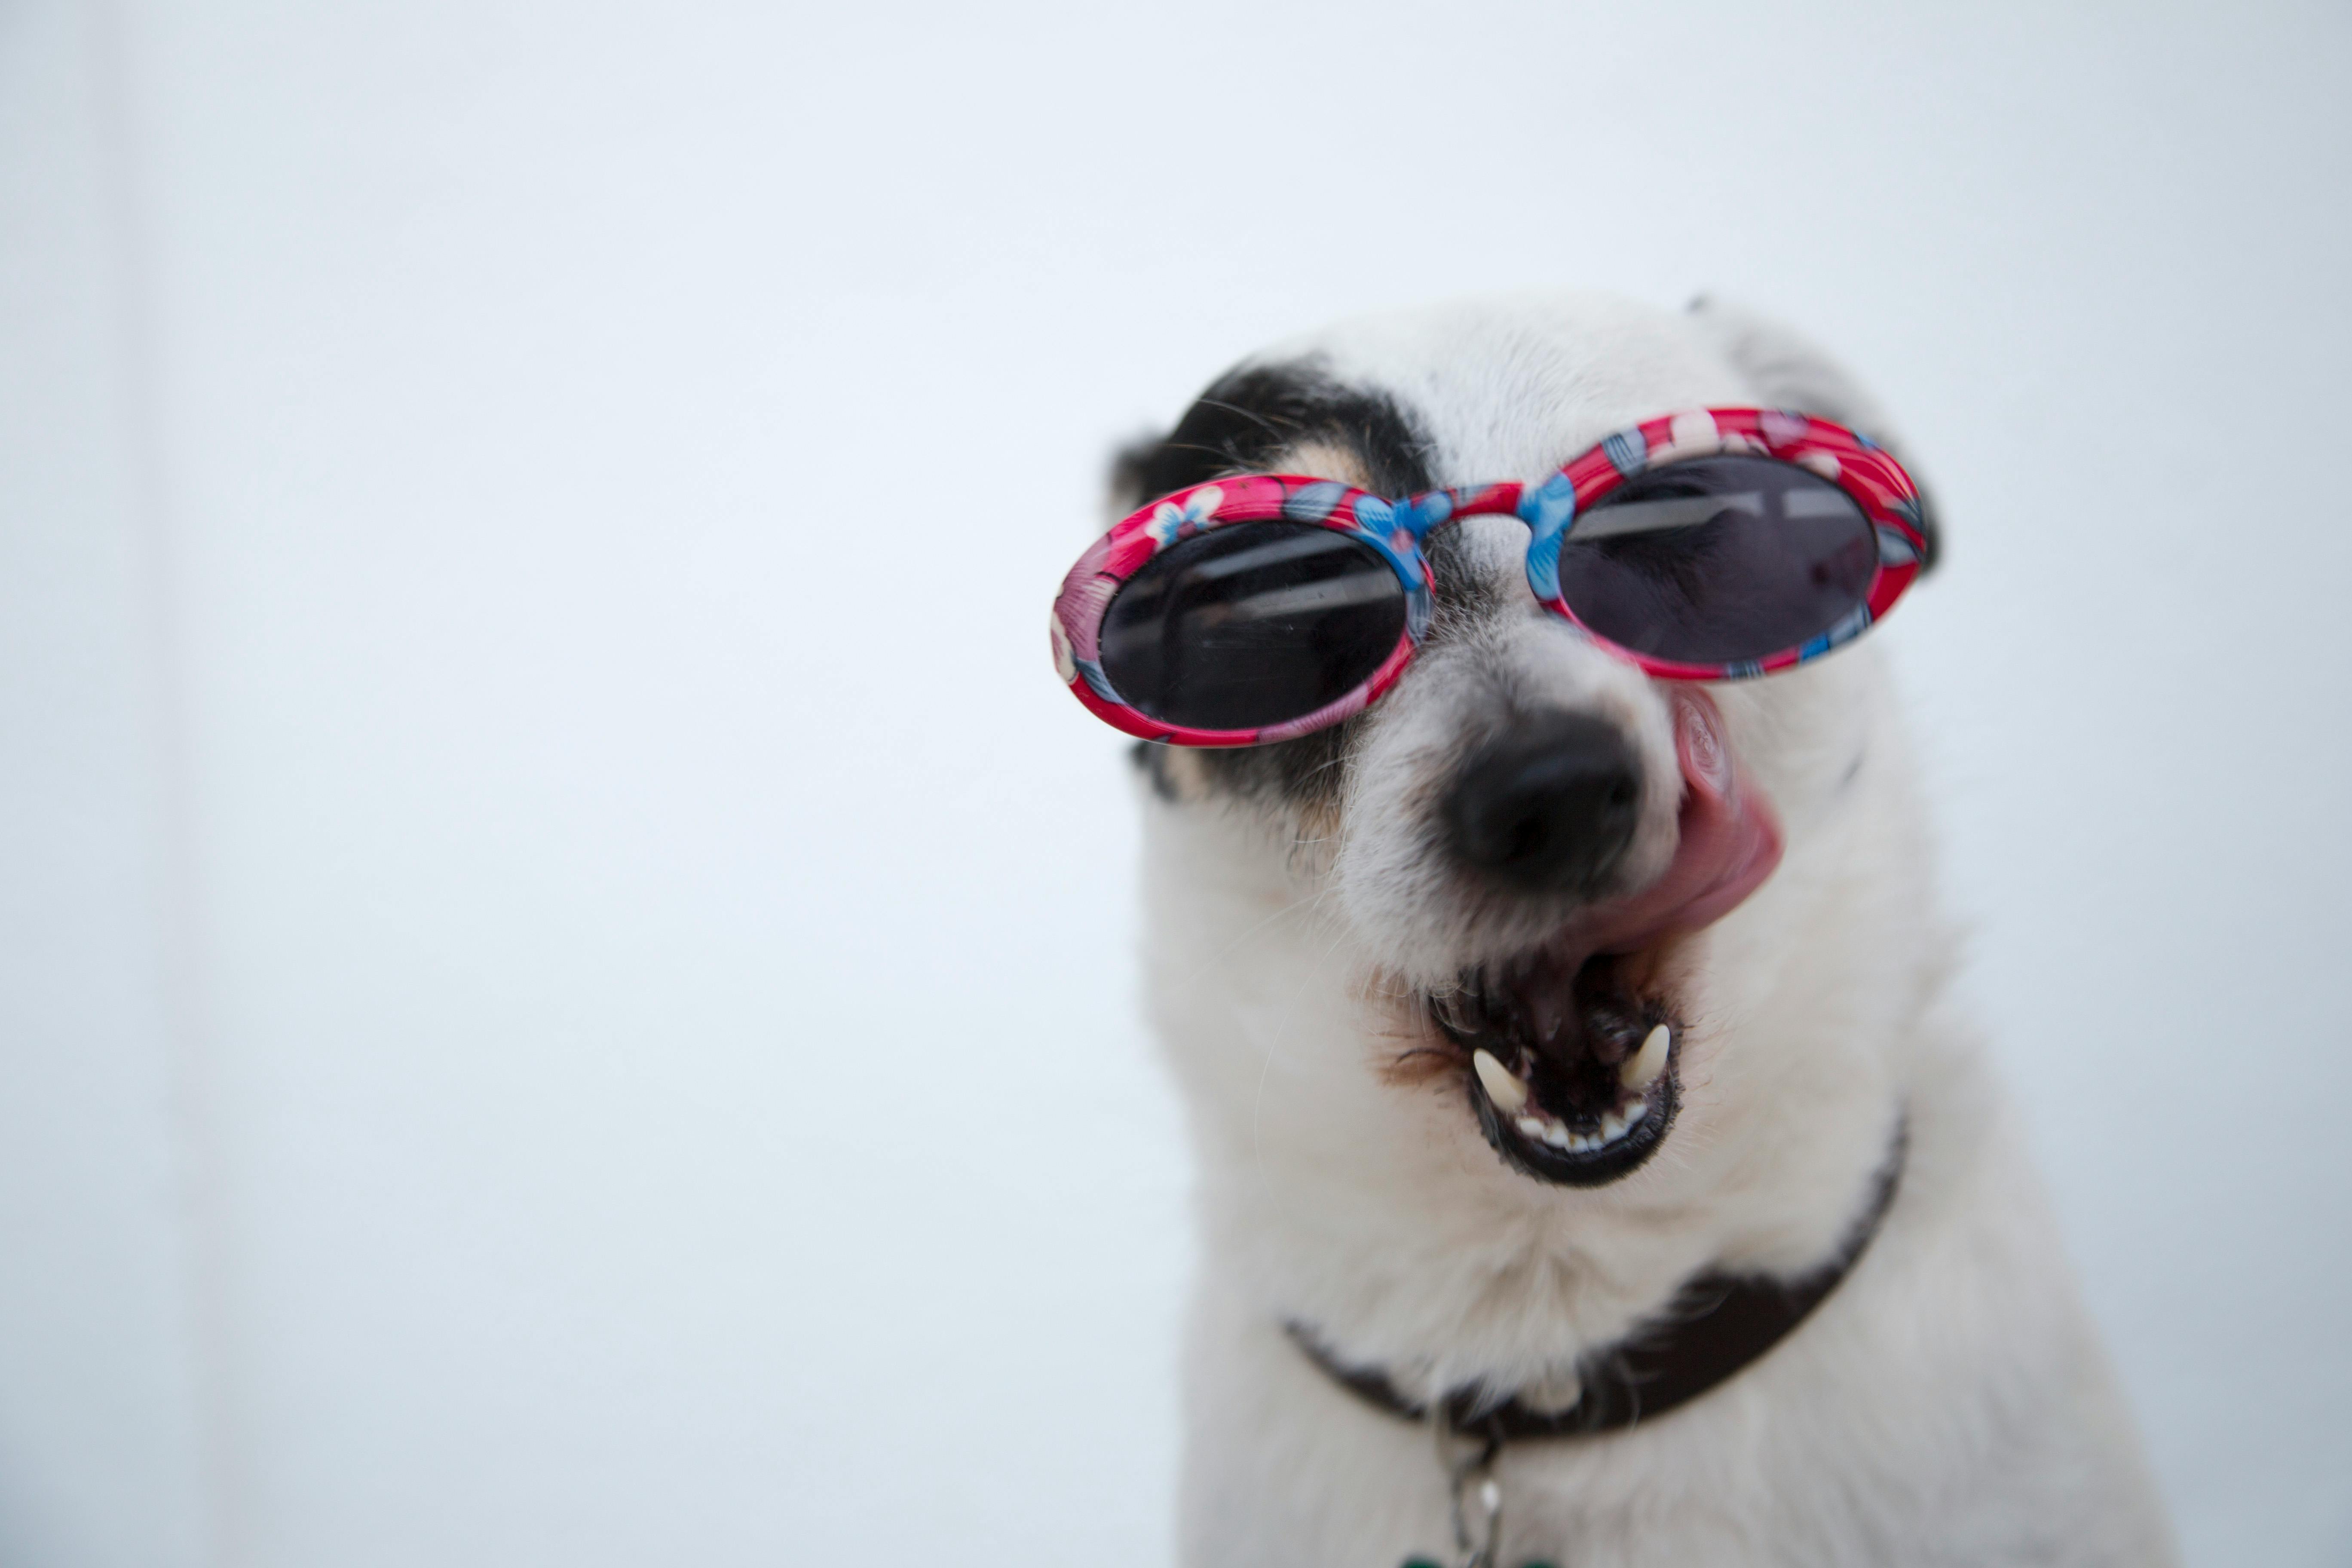 160+ hình ảnh chó mặt xệ hài hước, dễ thương, cute độc nhất - ALONGWALKER